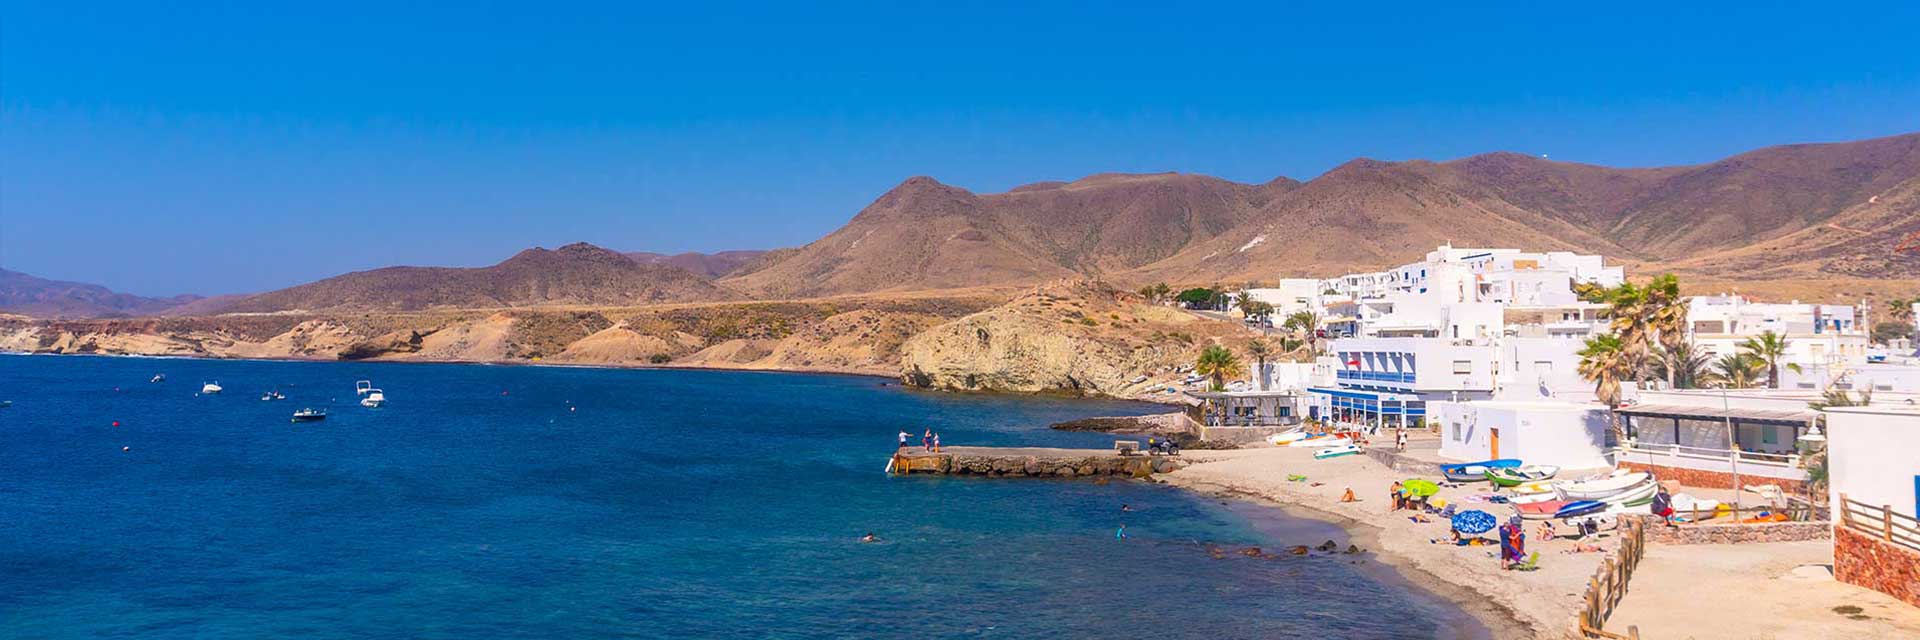 Cabo de Gata - Natural Reserve 【·】 Almería Coast